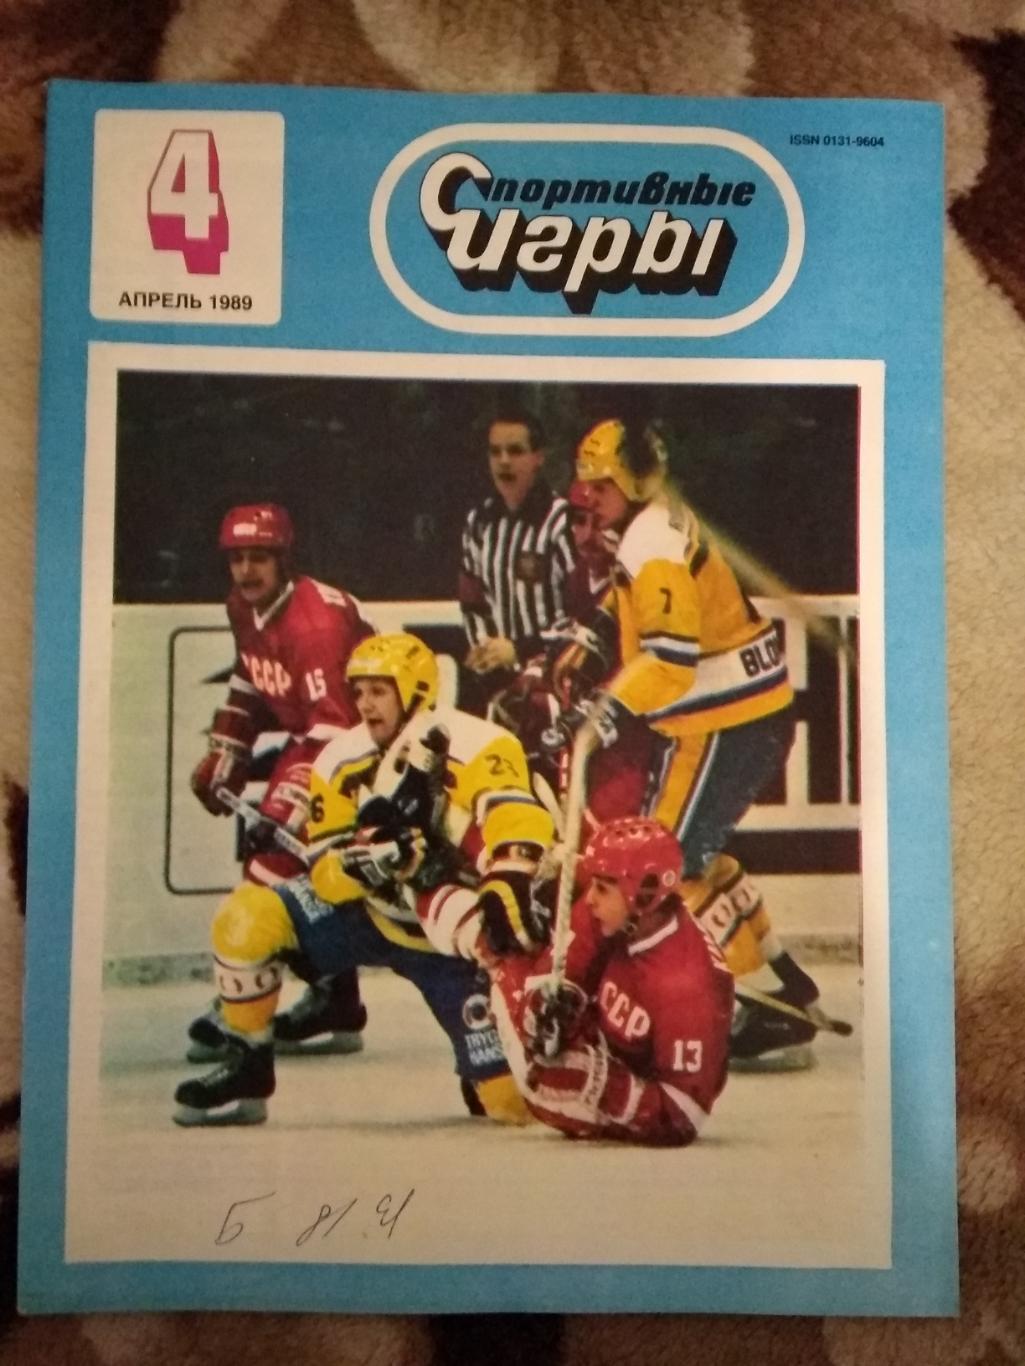 Журнал.Спортивные игры № 4 1989 г.